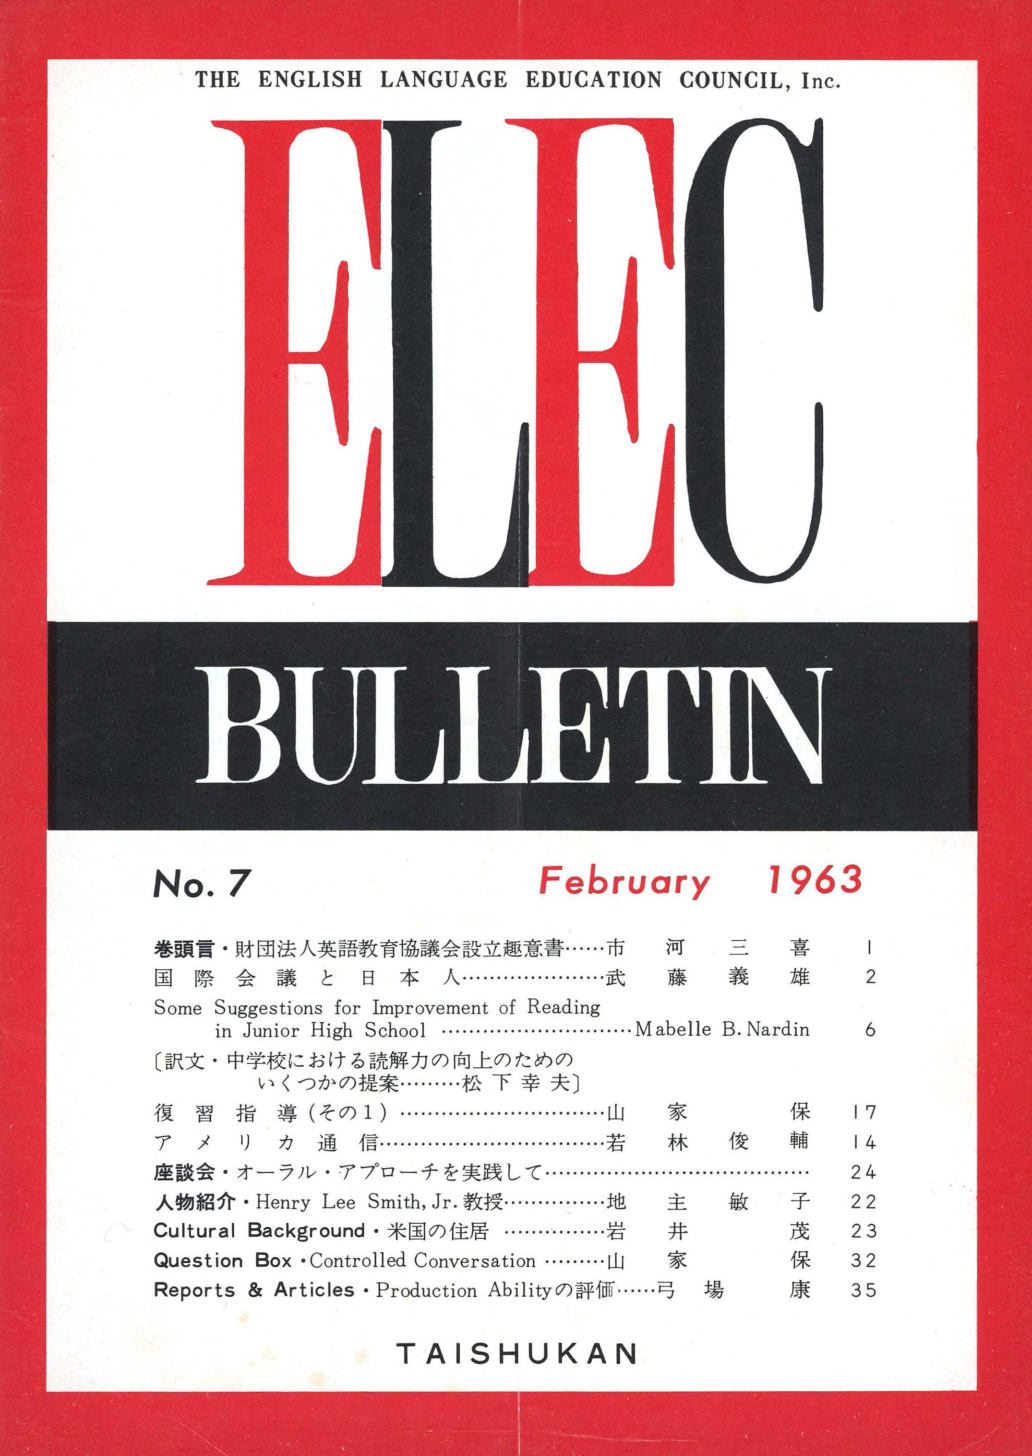 ELEC BULLETIN No. 7　February 1963